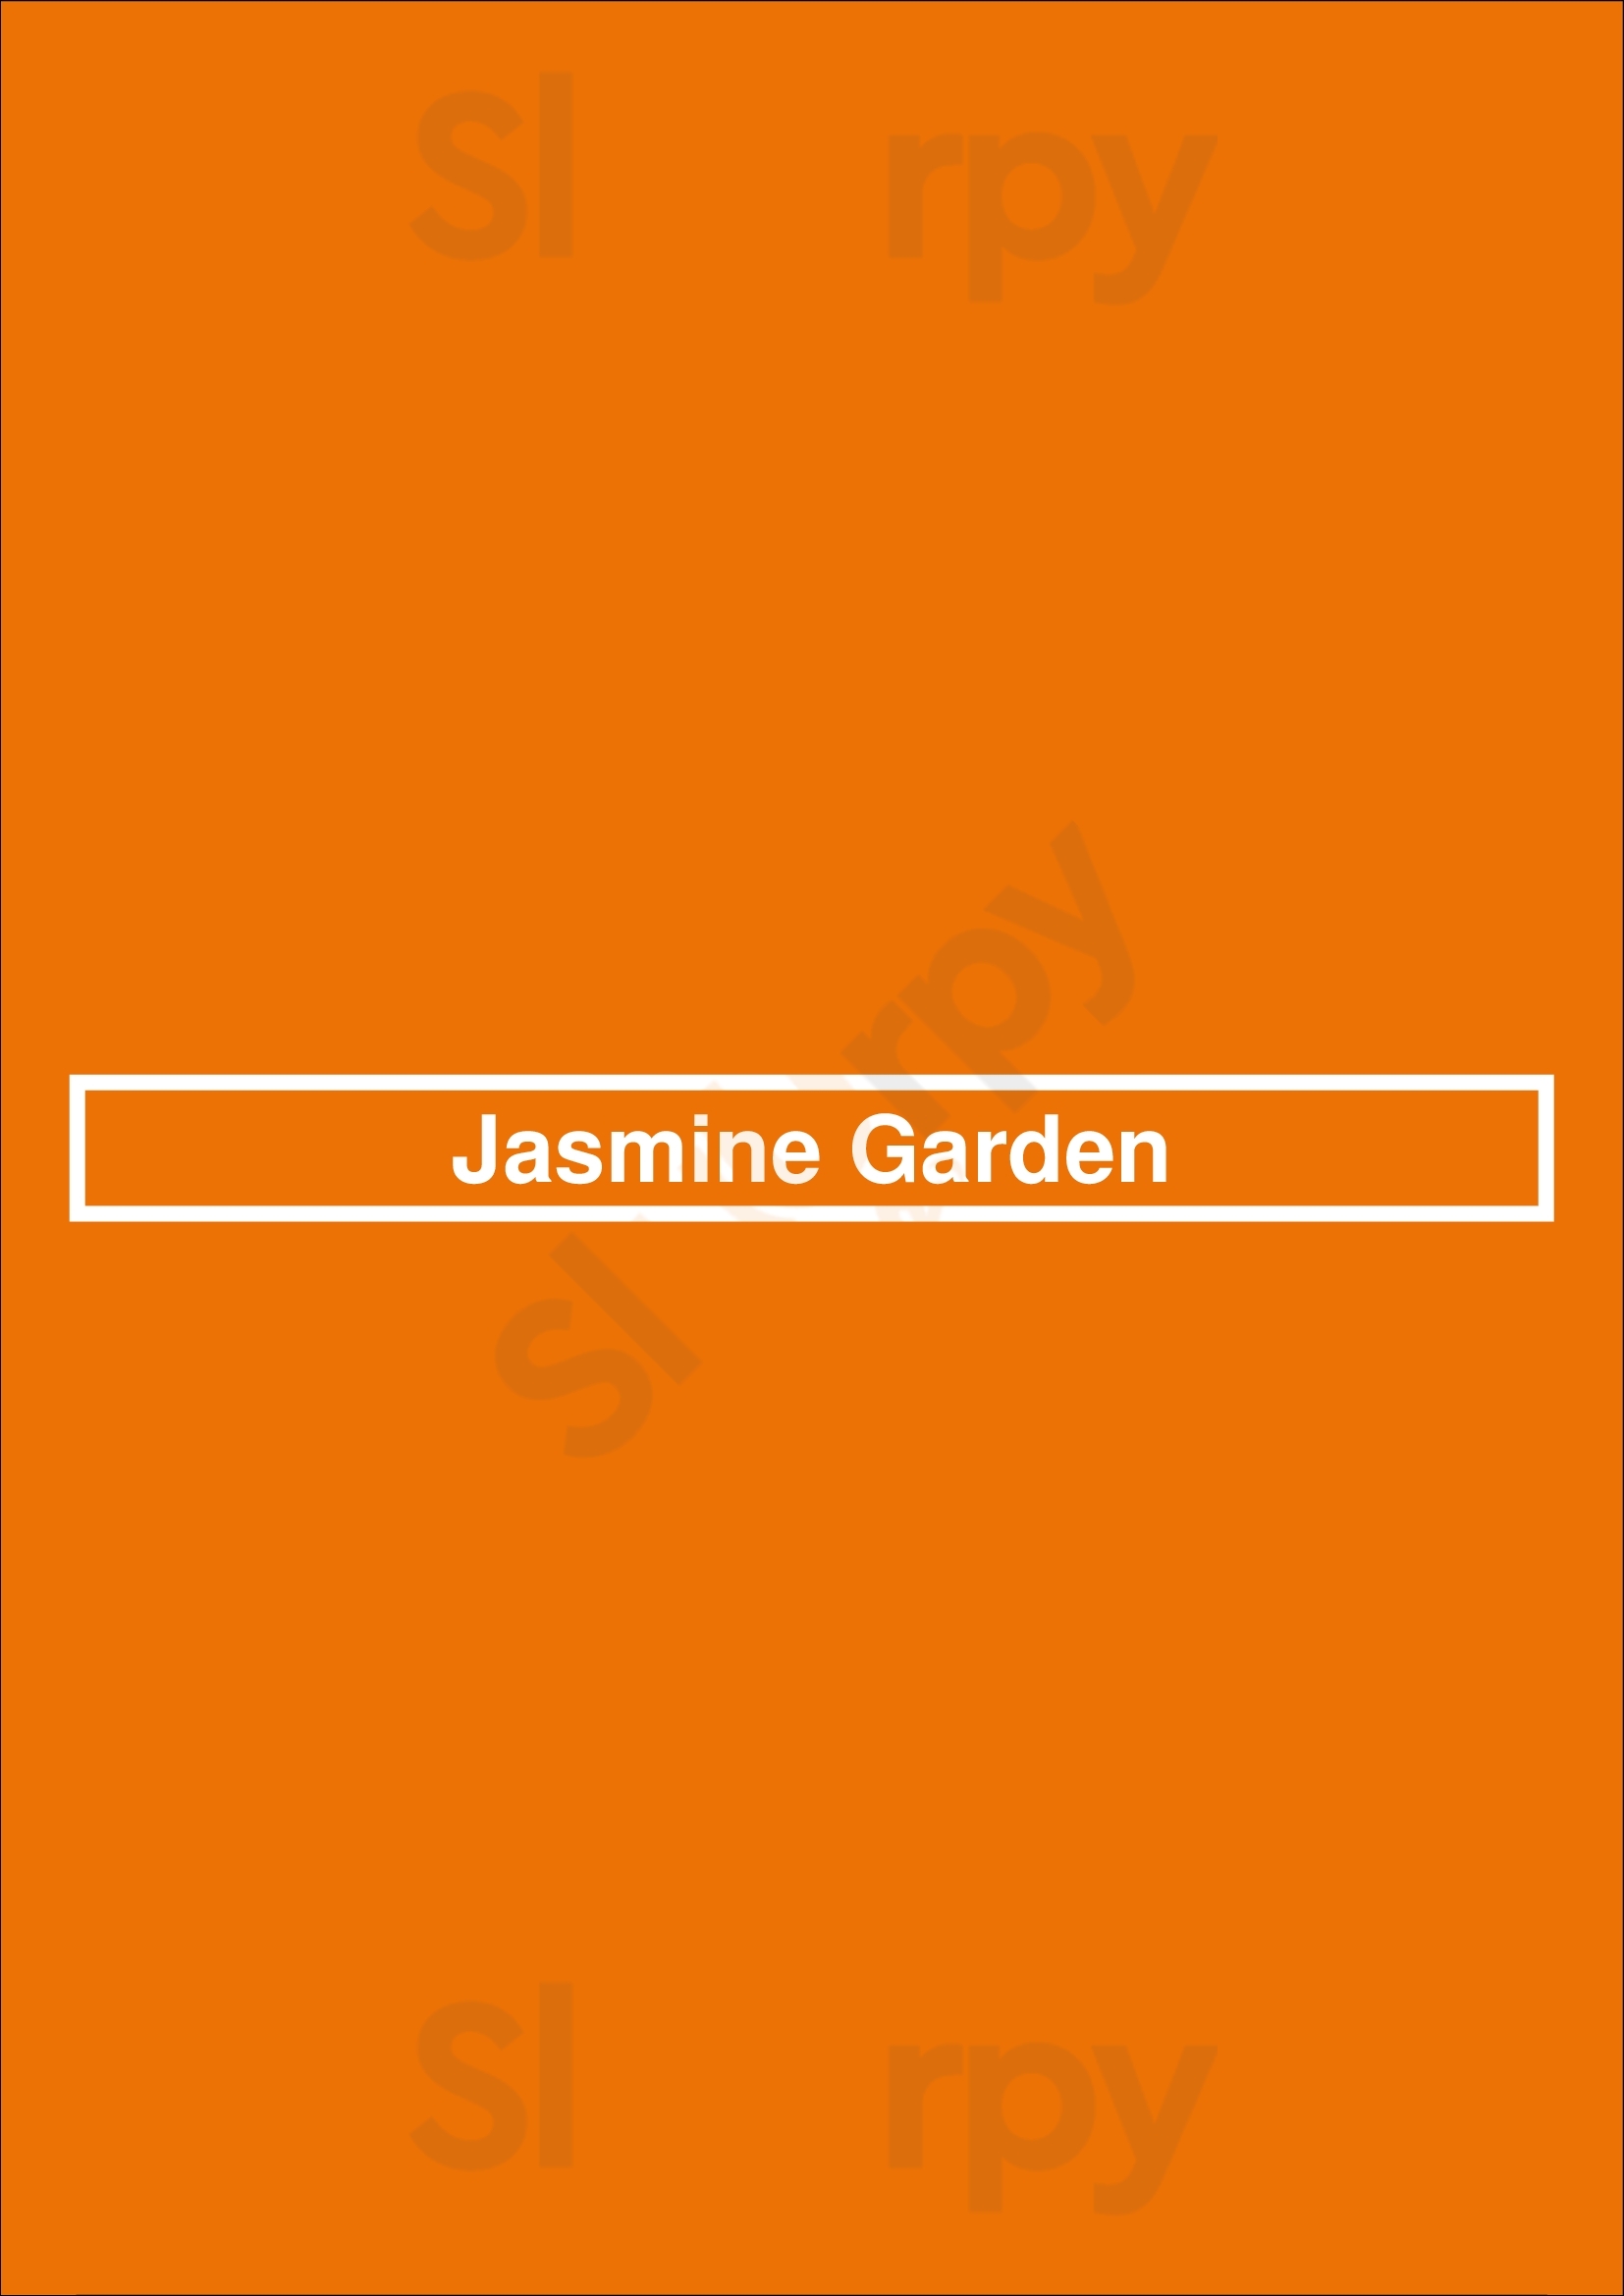 Jasmine Garden Worthing Menu - 1